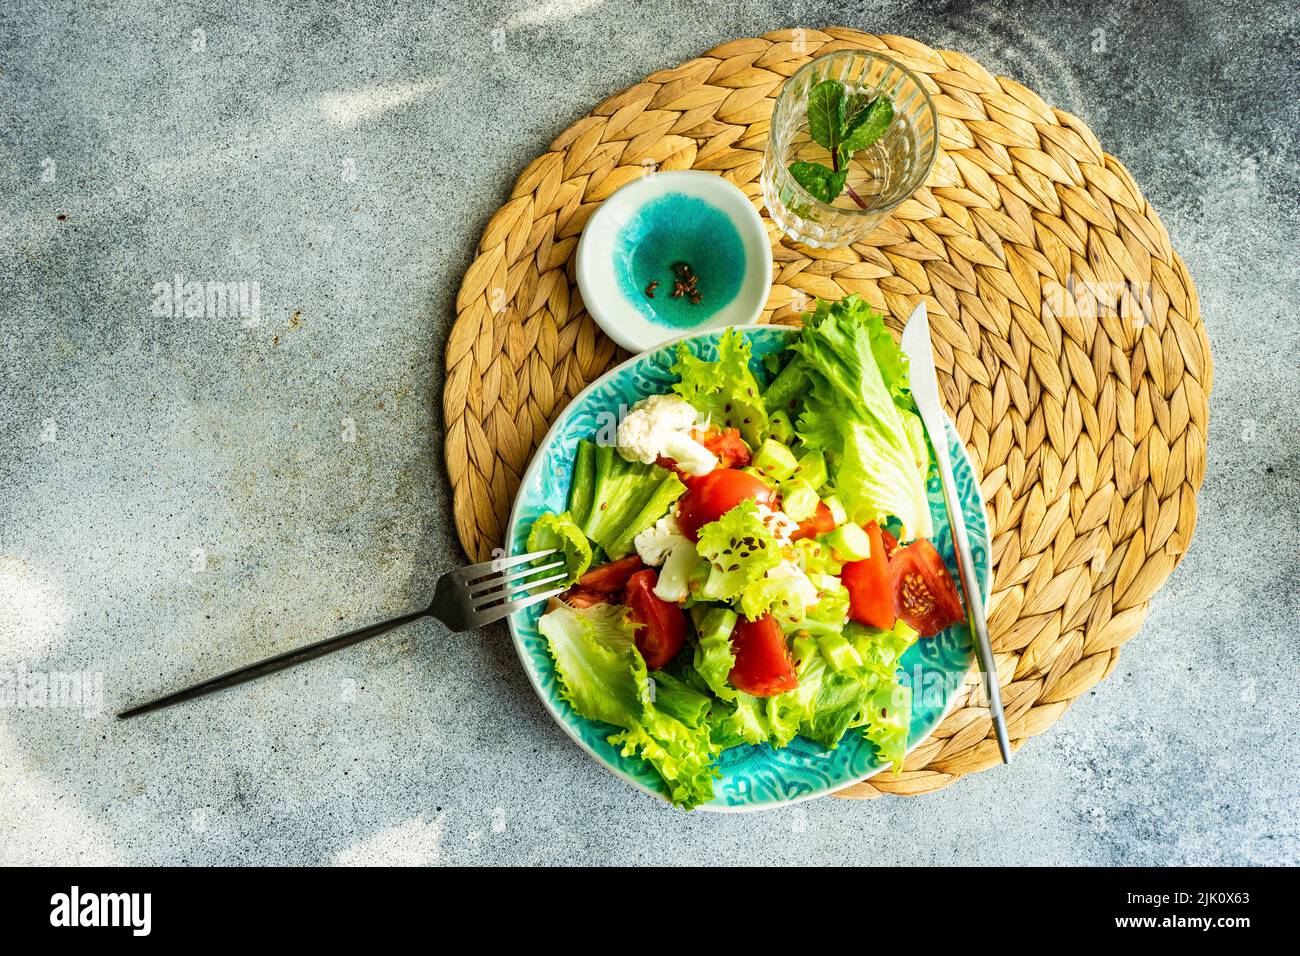 Cuenco con ensalada de verduras crudas con semillas de lino servido sobre mesa de hormigón Foto de stock